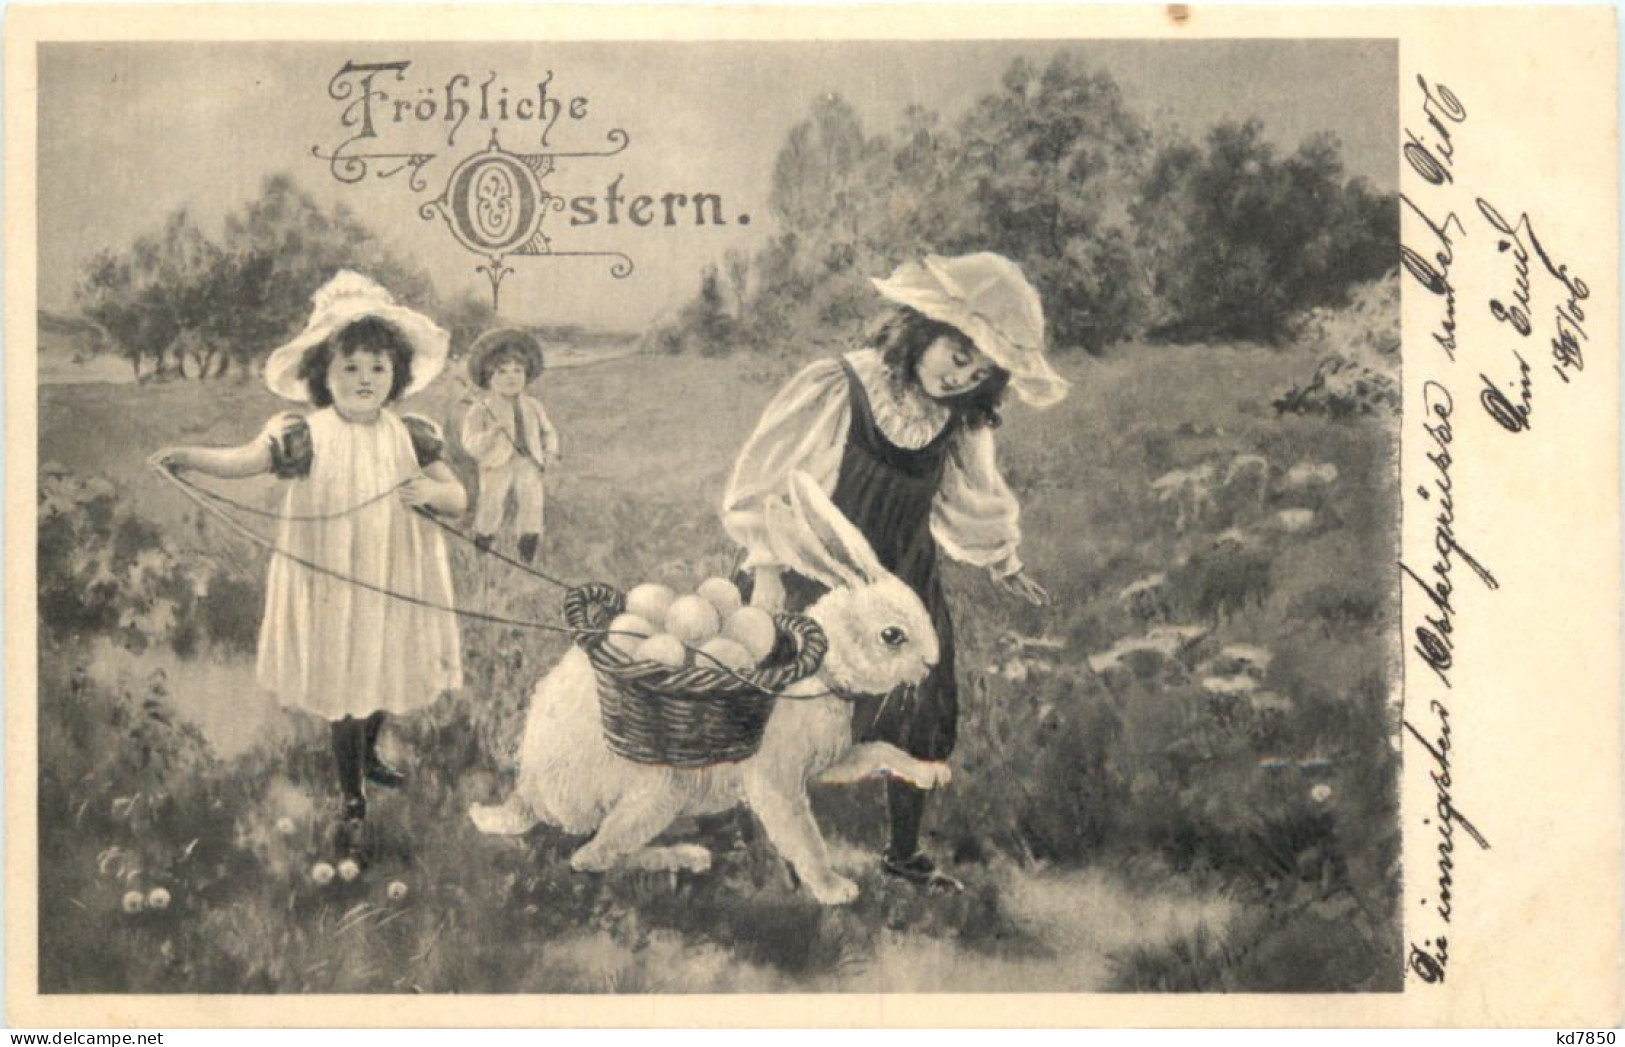 Ostern - Hase - Kinder - Easter